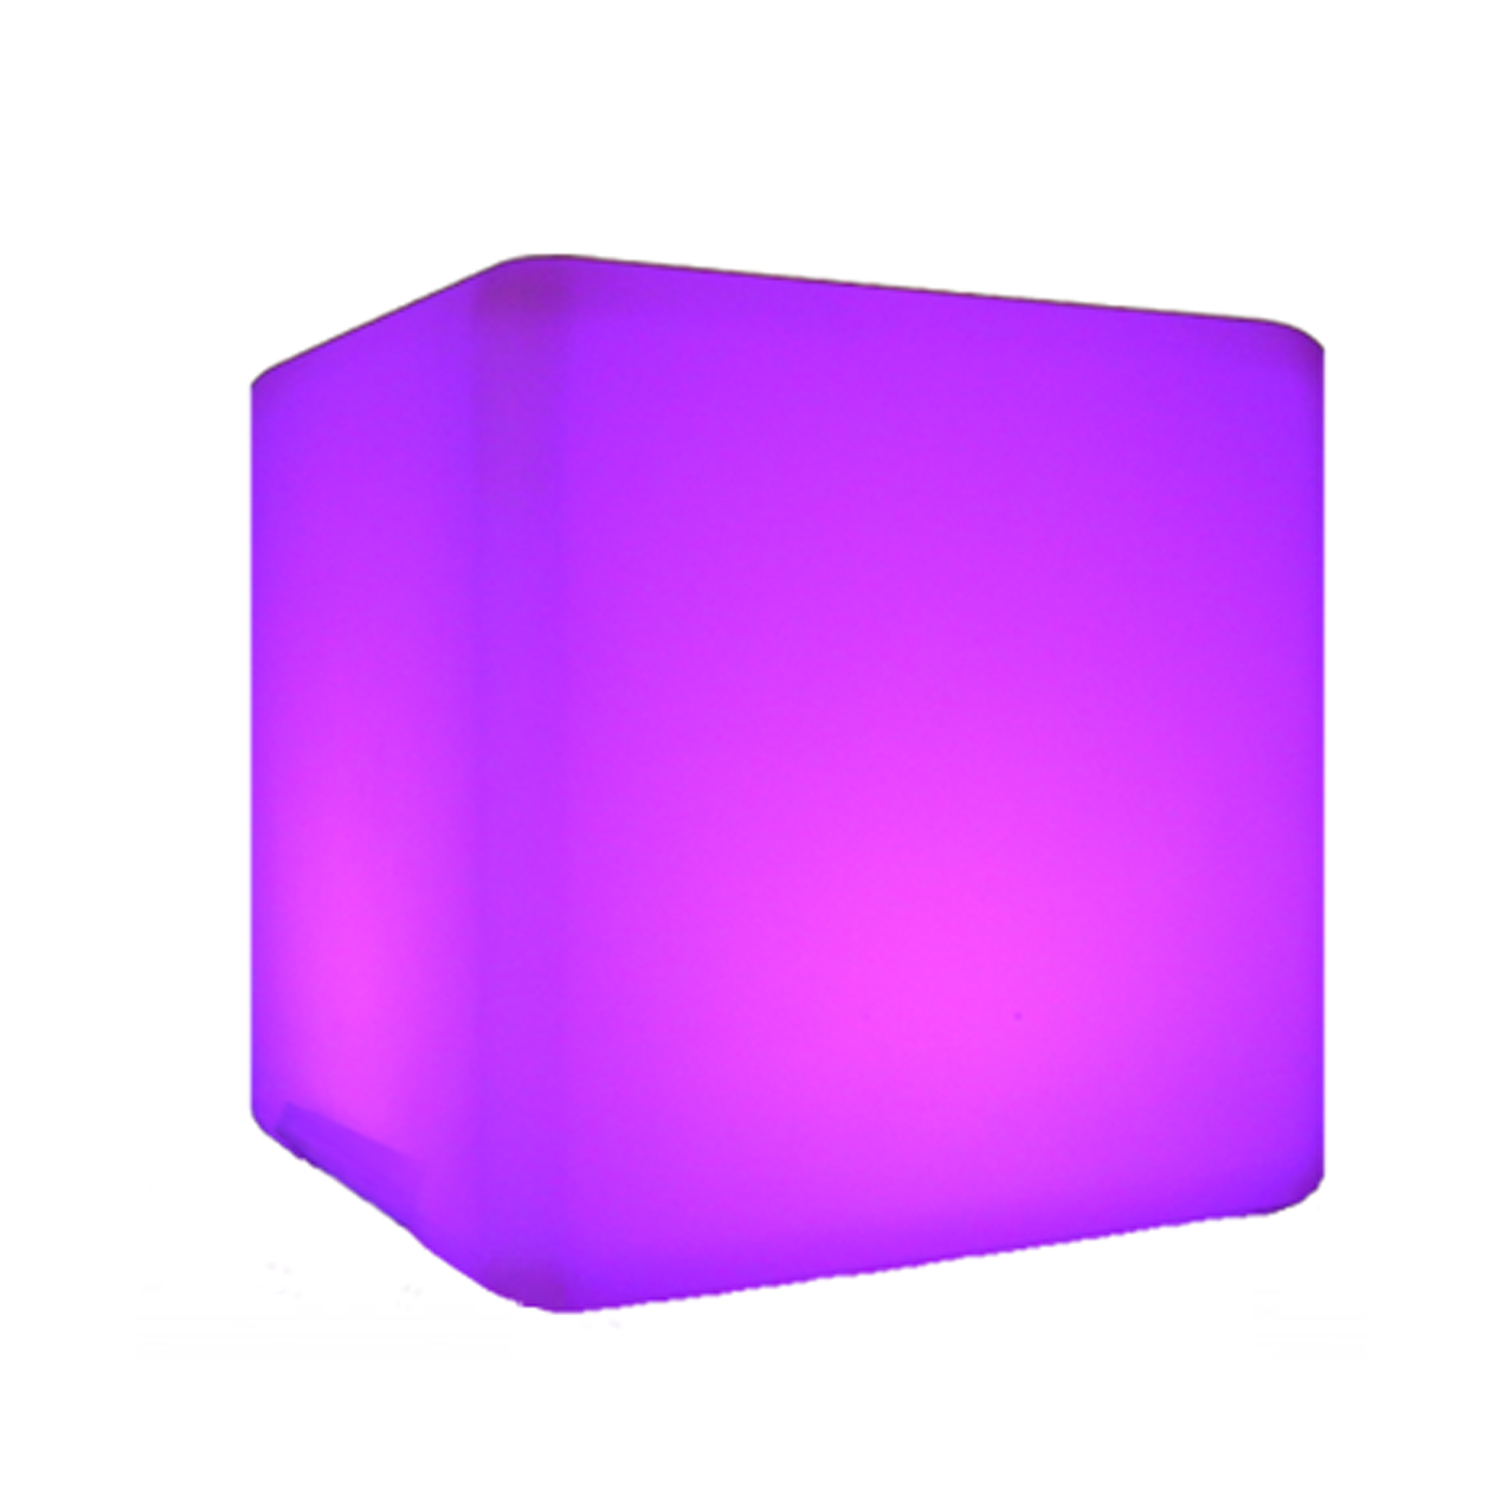 7EVEN LED Design Cube Möbel LED